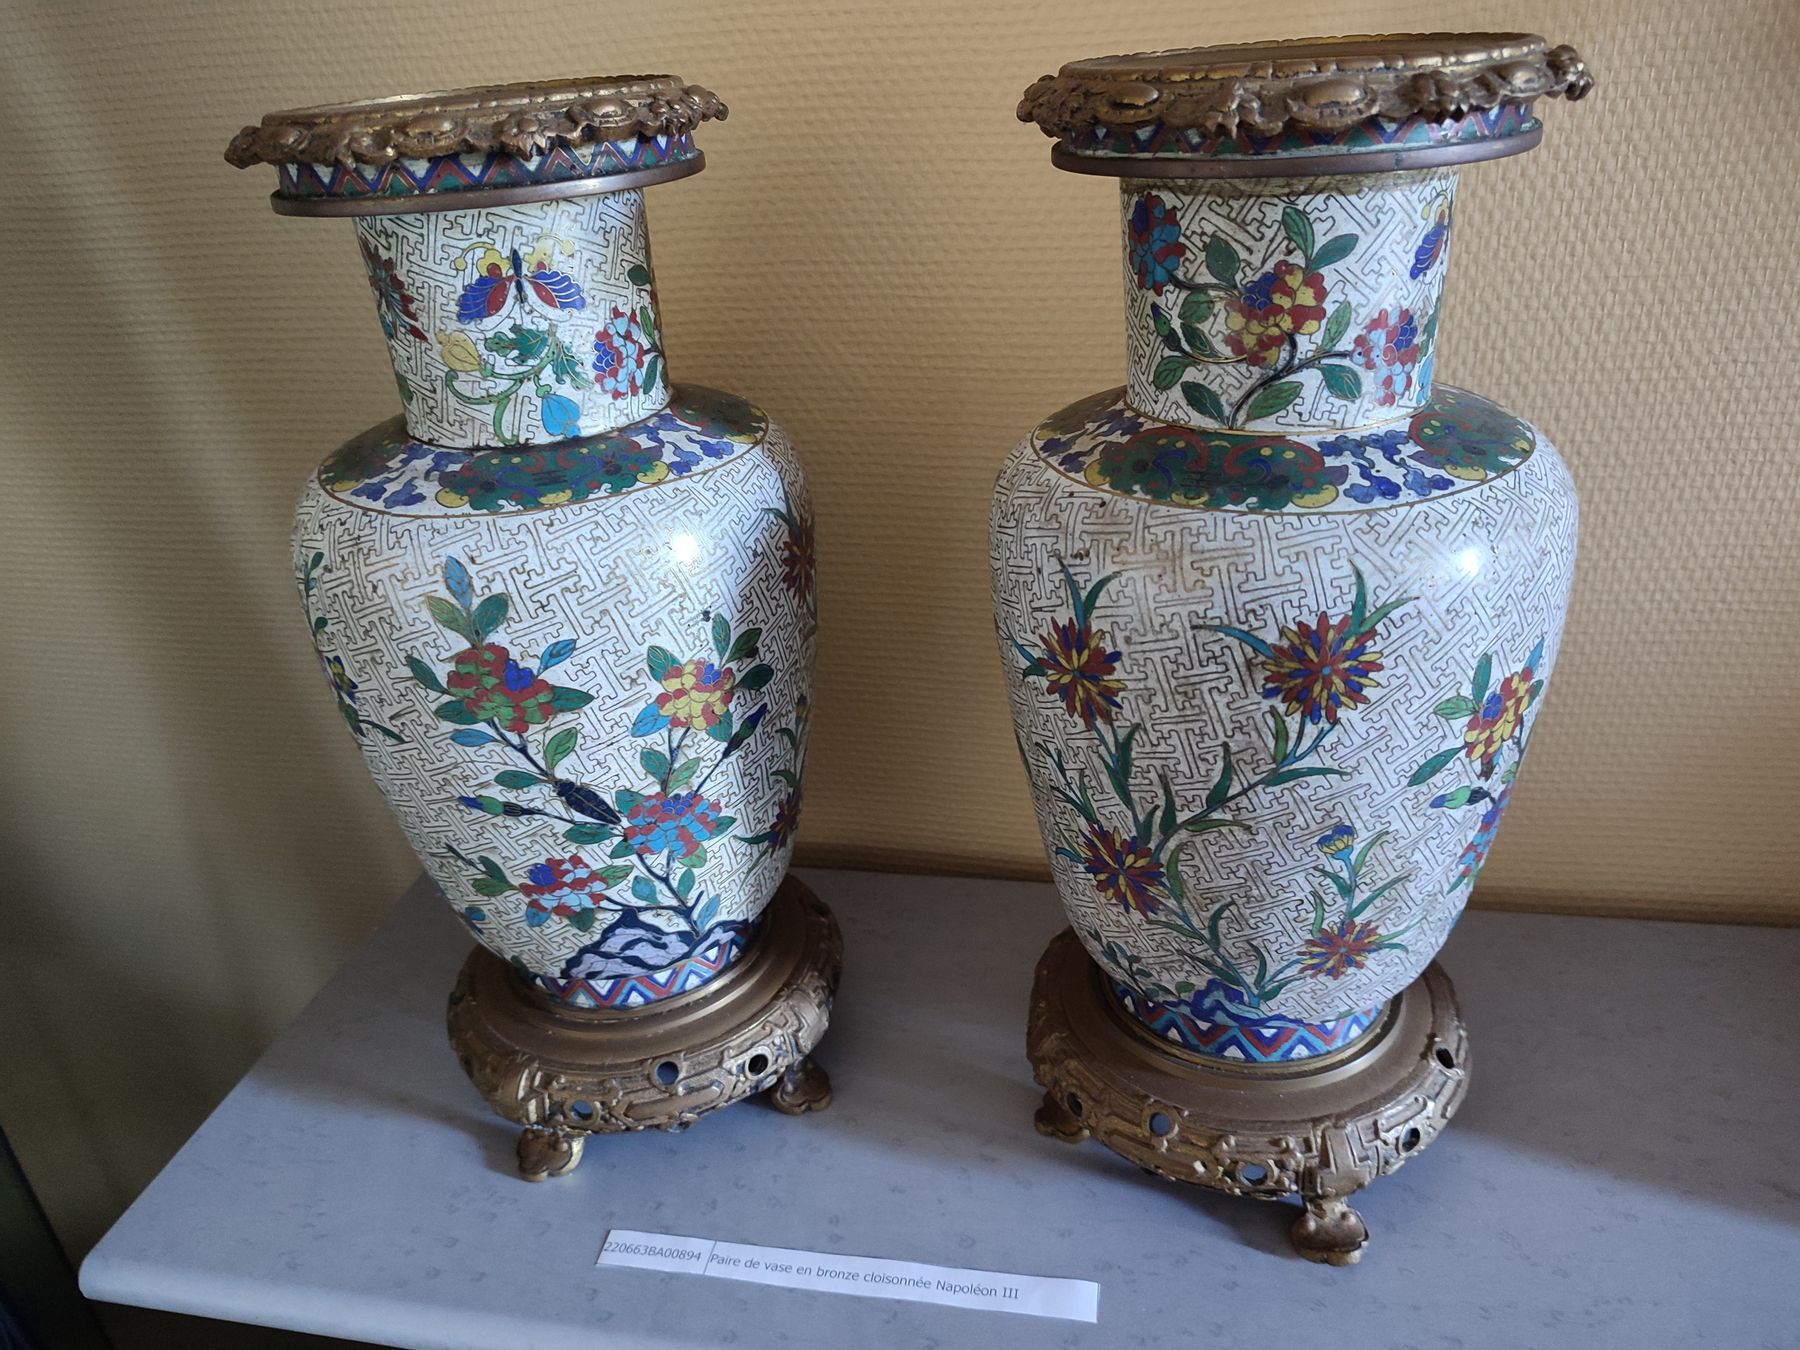 Null 一对多色花和叶子的花瓶
景泰蓝珐琅
古铜色框架
中国

	19世纪

	高37厘米 

估计价值：130欧元。
按原样出售，不作保证，指示性描述。
仅&hellip;